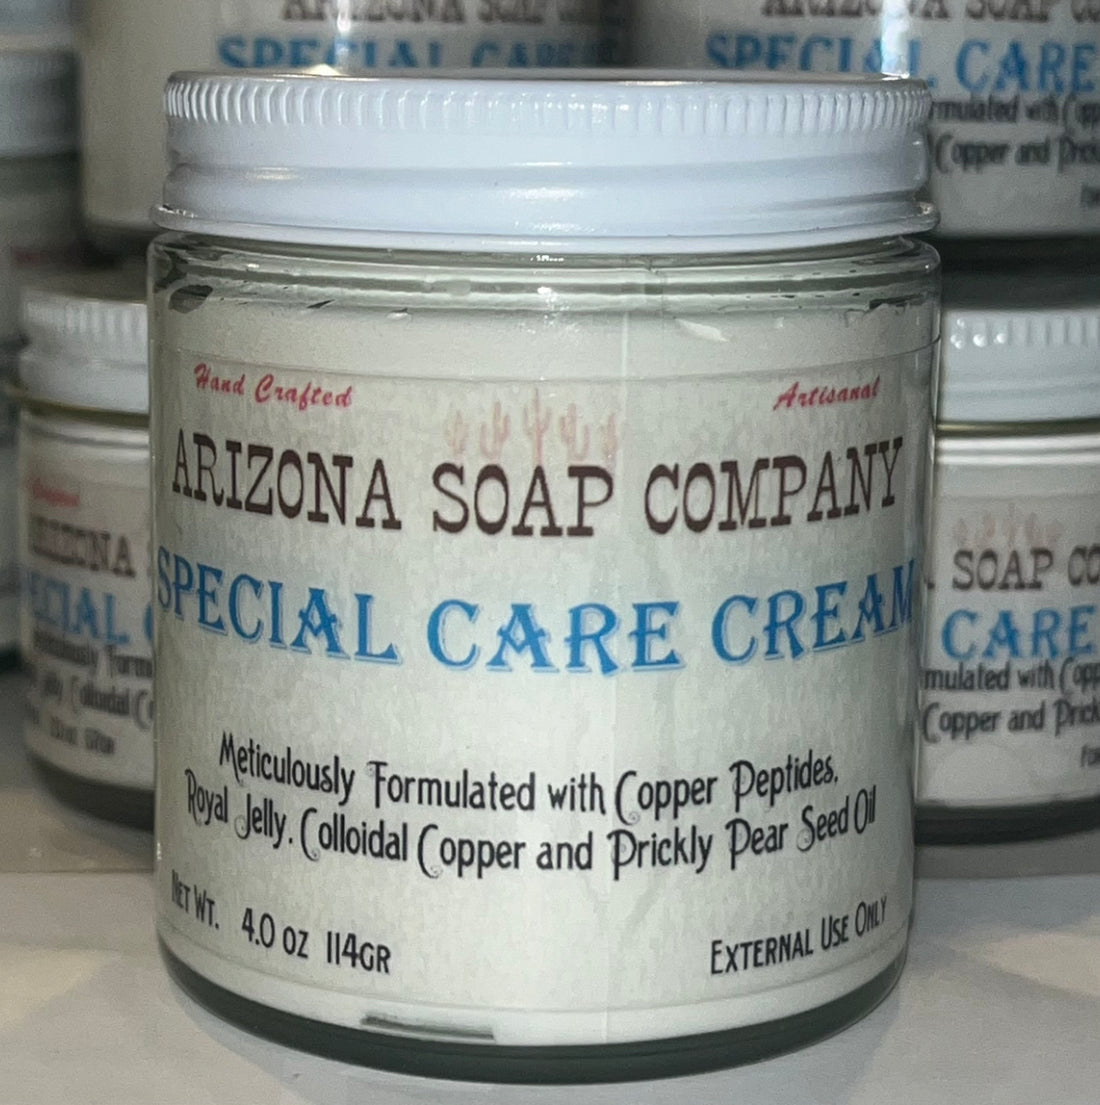 Special Care Cream